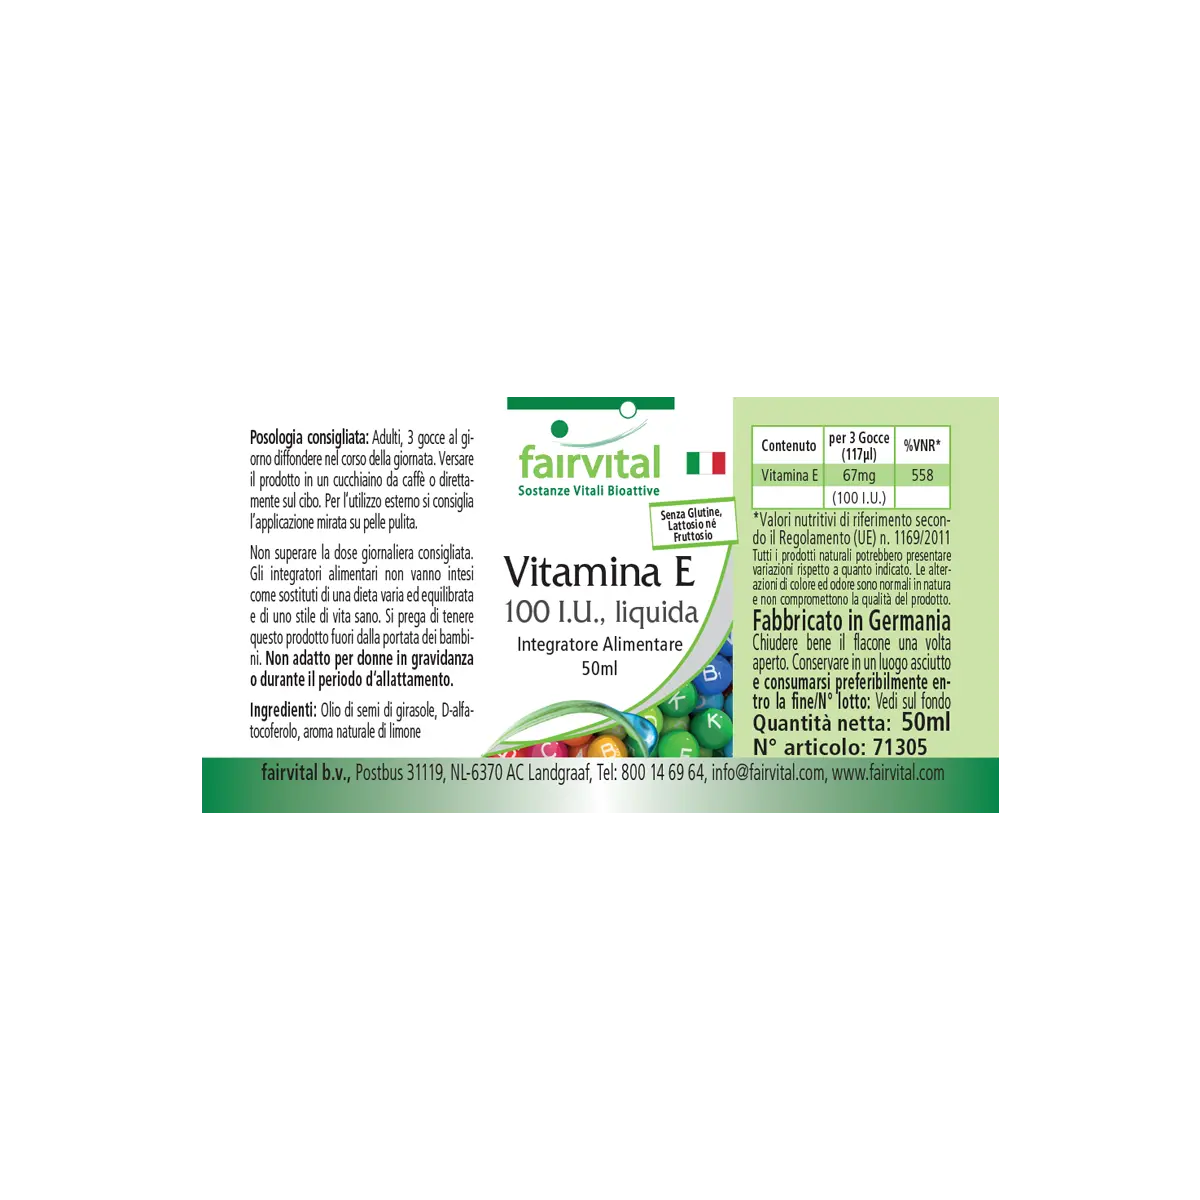 Aceite de vitamina E 100 U.I. por 3 gotas - 50ml